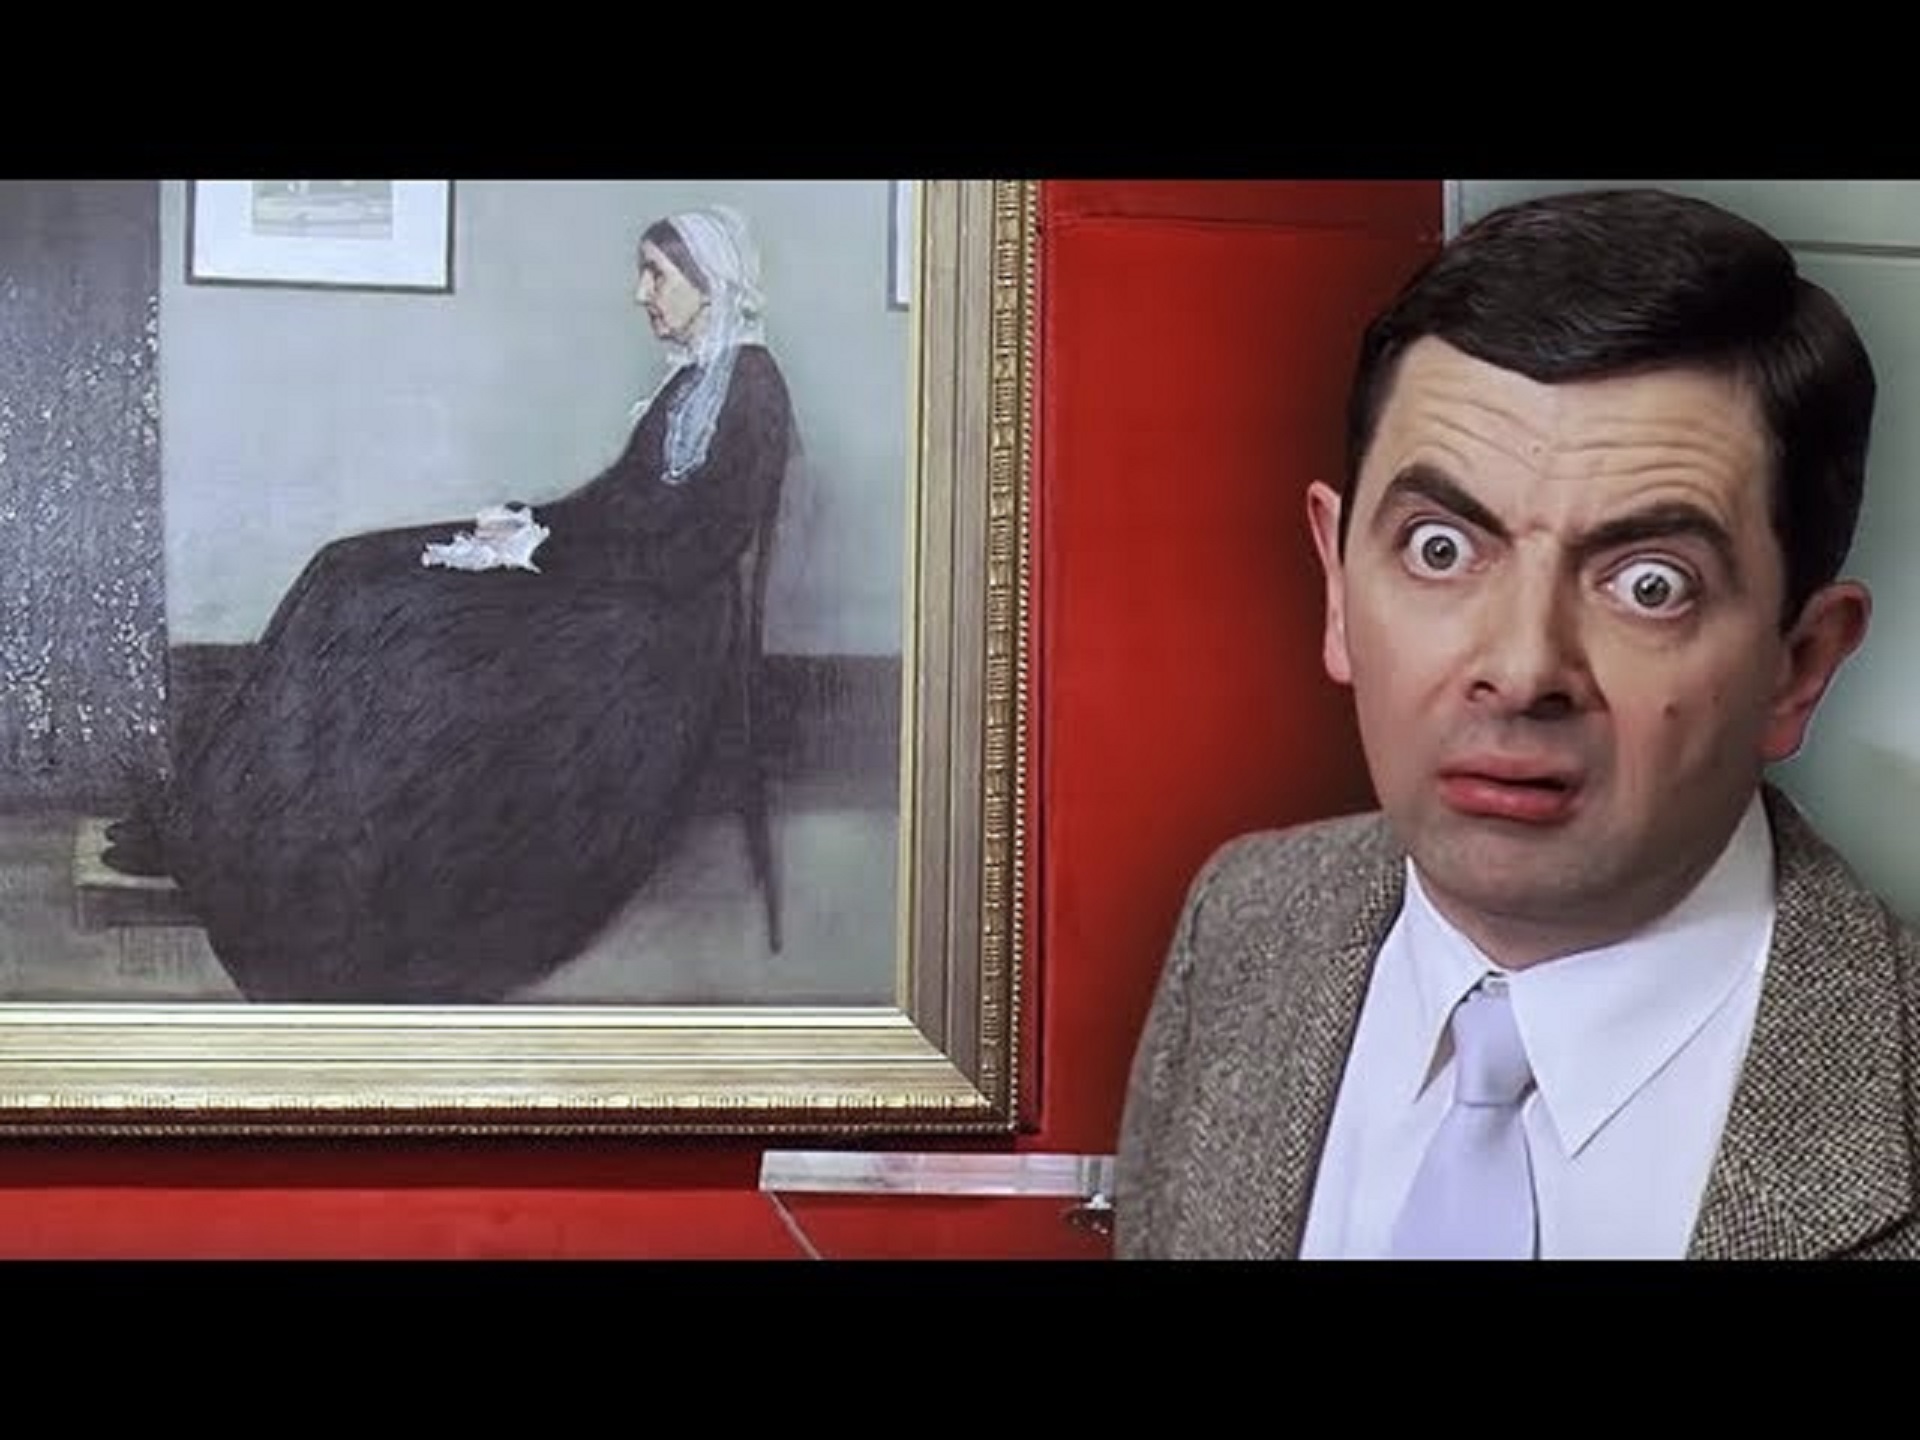 Γιατί ο Μίστερ Μπιν καταστρέφει αυτόν τον πίνακα σε ταινία του; Το έργο τέχνης που μισούν με πάθος οι Βρετανοί